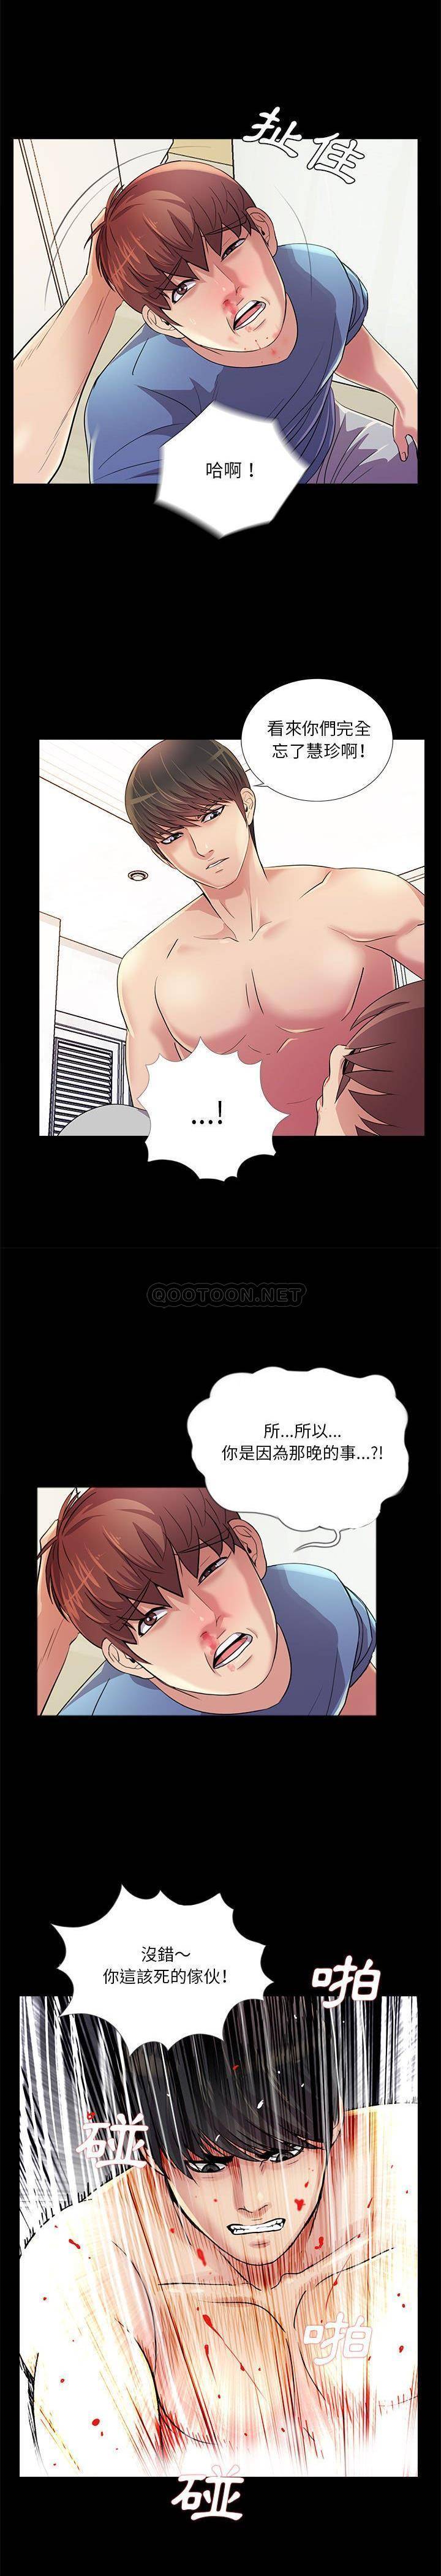 韩国污漫画 神秘復學生 第25话 14